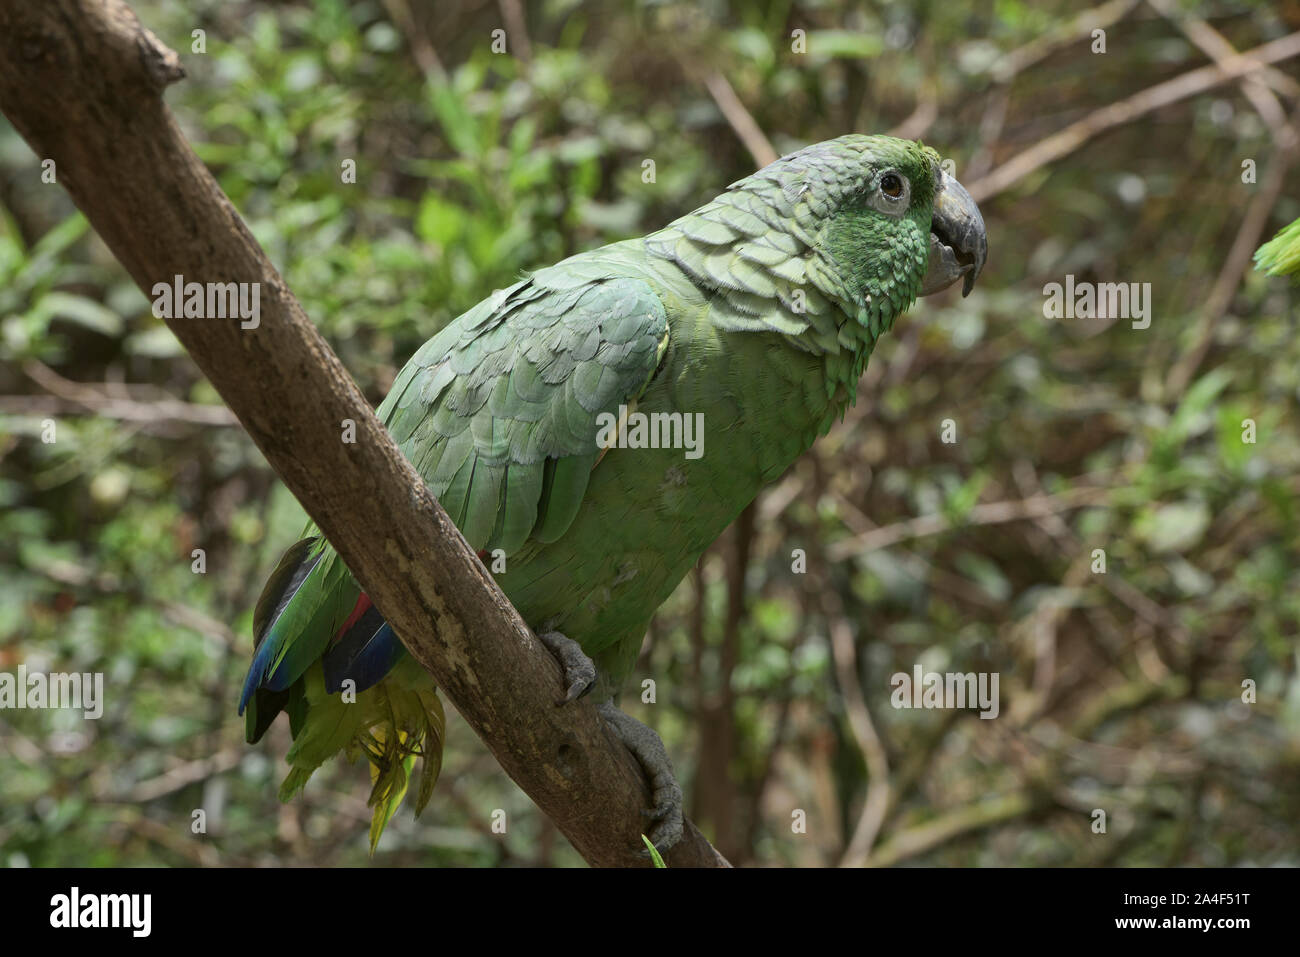 Southern mealy parrot (Amazona farinosa), Ecuador Stock Photo